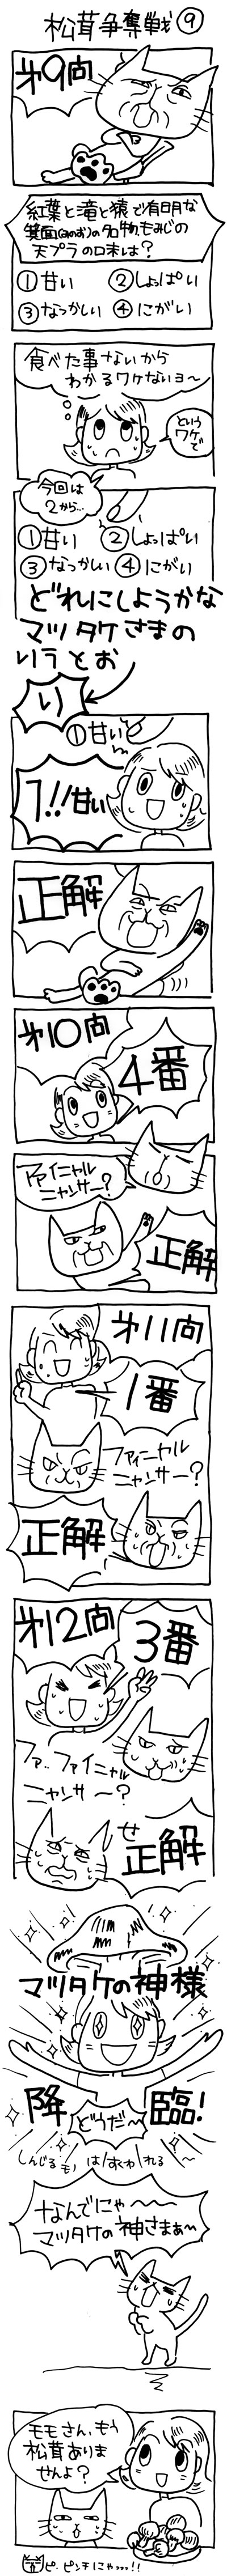 木工漫画　松茸争奪戦　９　1014